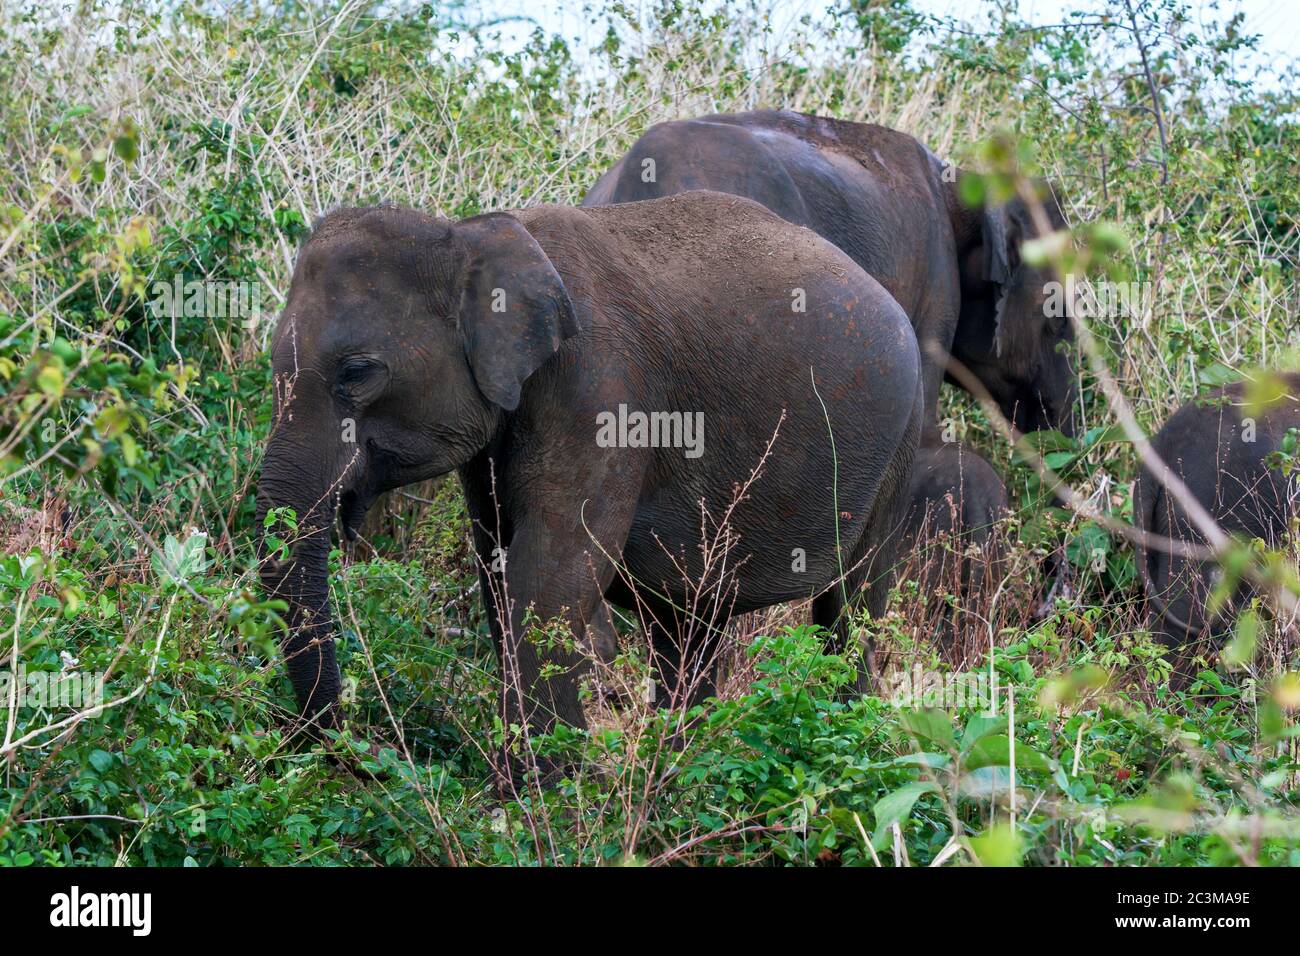 Les éléphants paître parmi les terres de savane dans le parc national d'Uda Walawe. Ce parc national est situé à 21 km d'Embilipitiya, au Sri Lanka. Banque D'Images